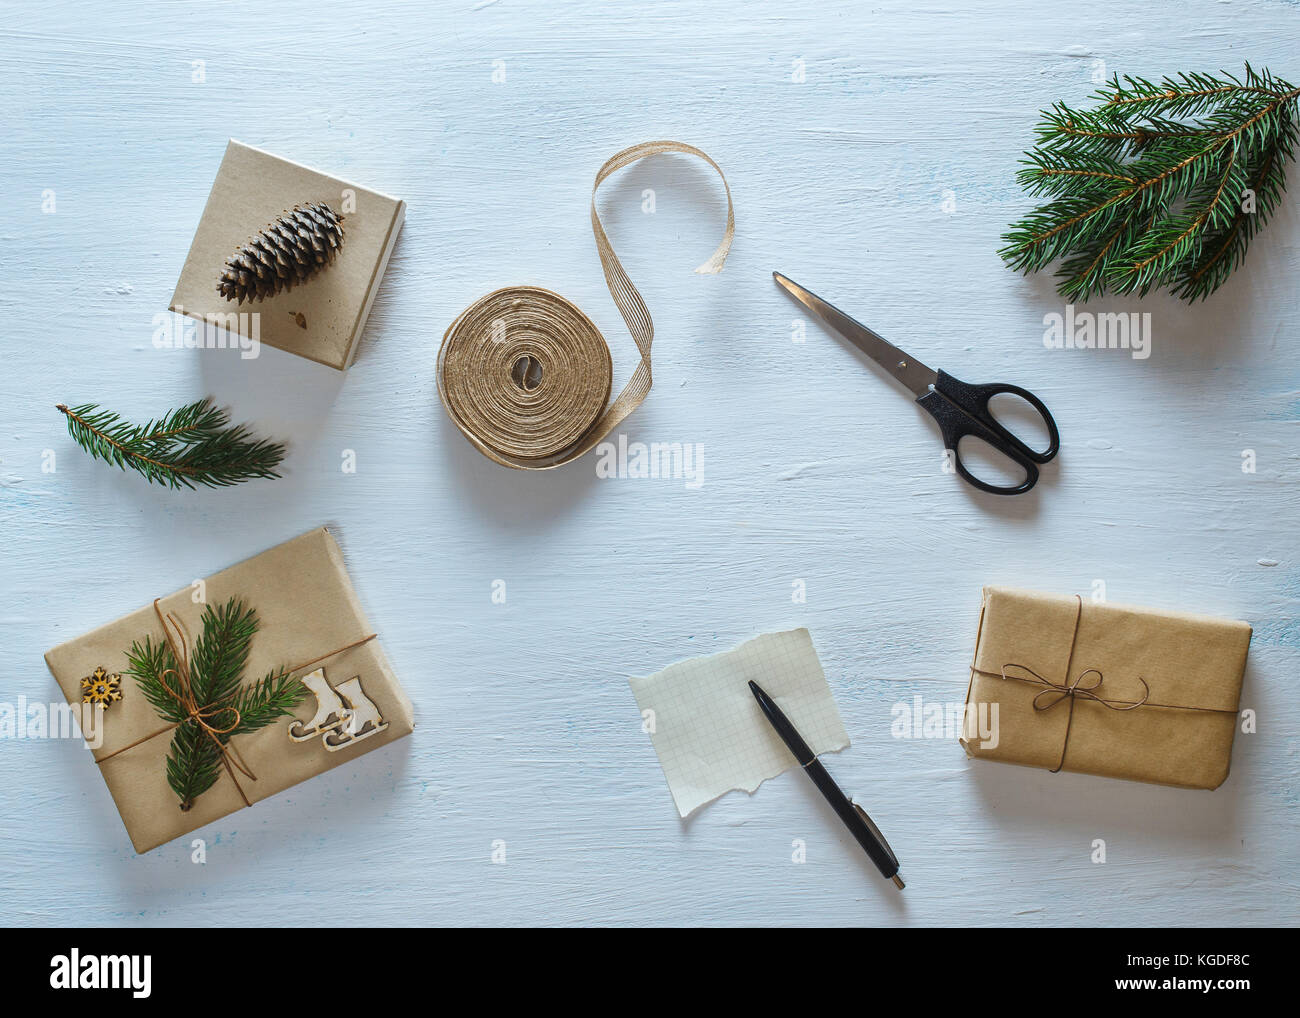 Weihnachten Geschenk Verpackungen Zusammensetzung. Weihnachten Geschenke, tannenzweigen, Schere, Band, Stift mit leeren Blatt auf Blau Schreibtisch. Flach, Ansicht von oben Stockfoto